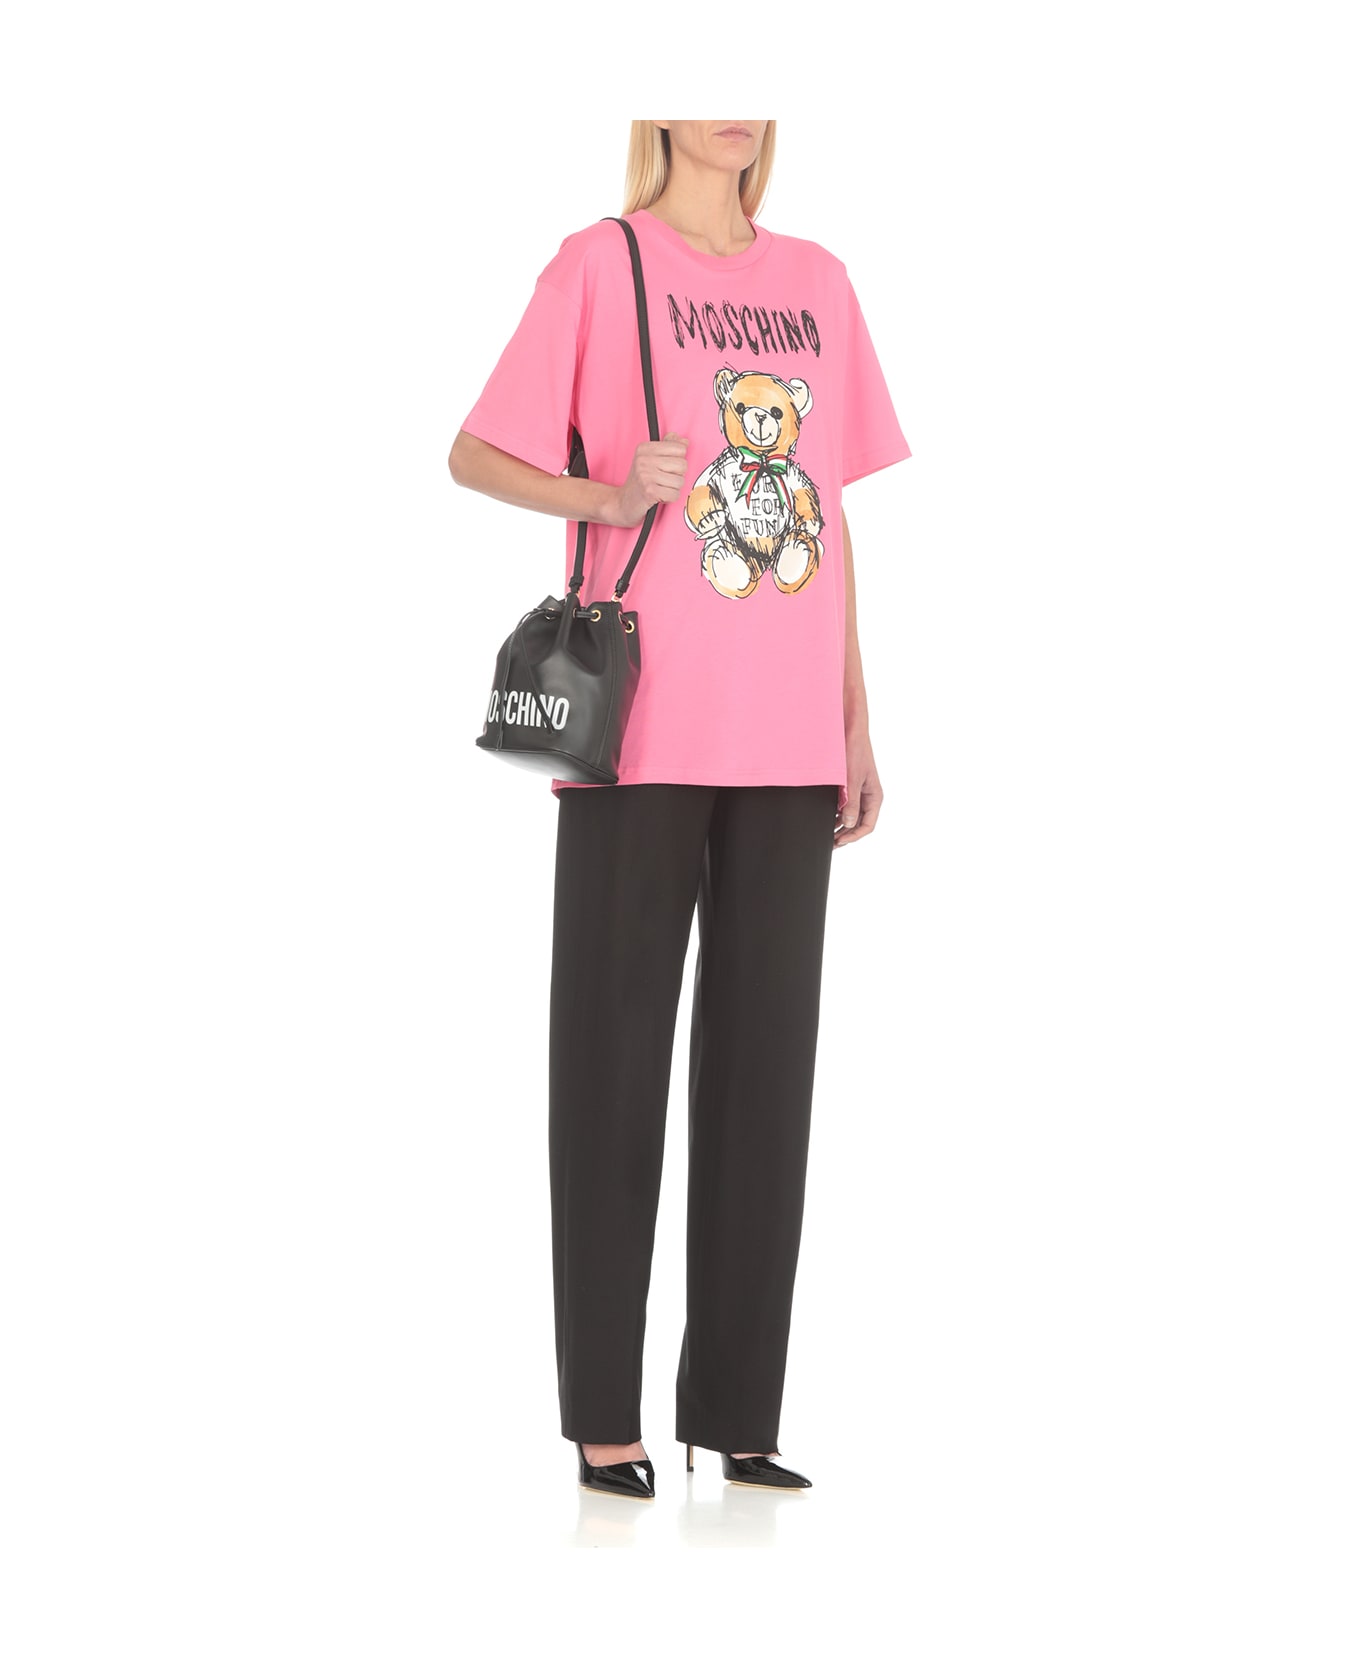 Moschino Drawn Teddy Bear T-shirt - Fuchsia Tシャツ